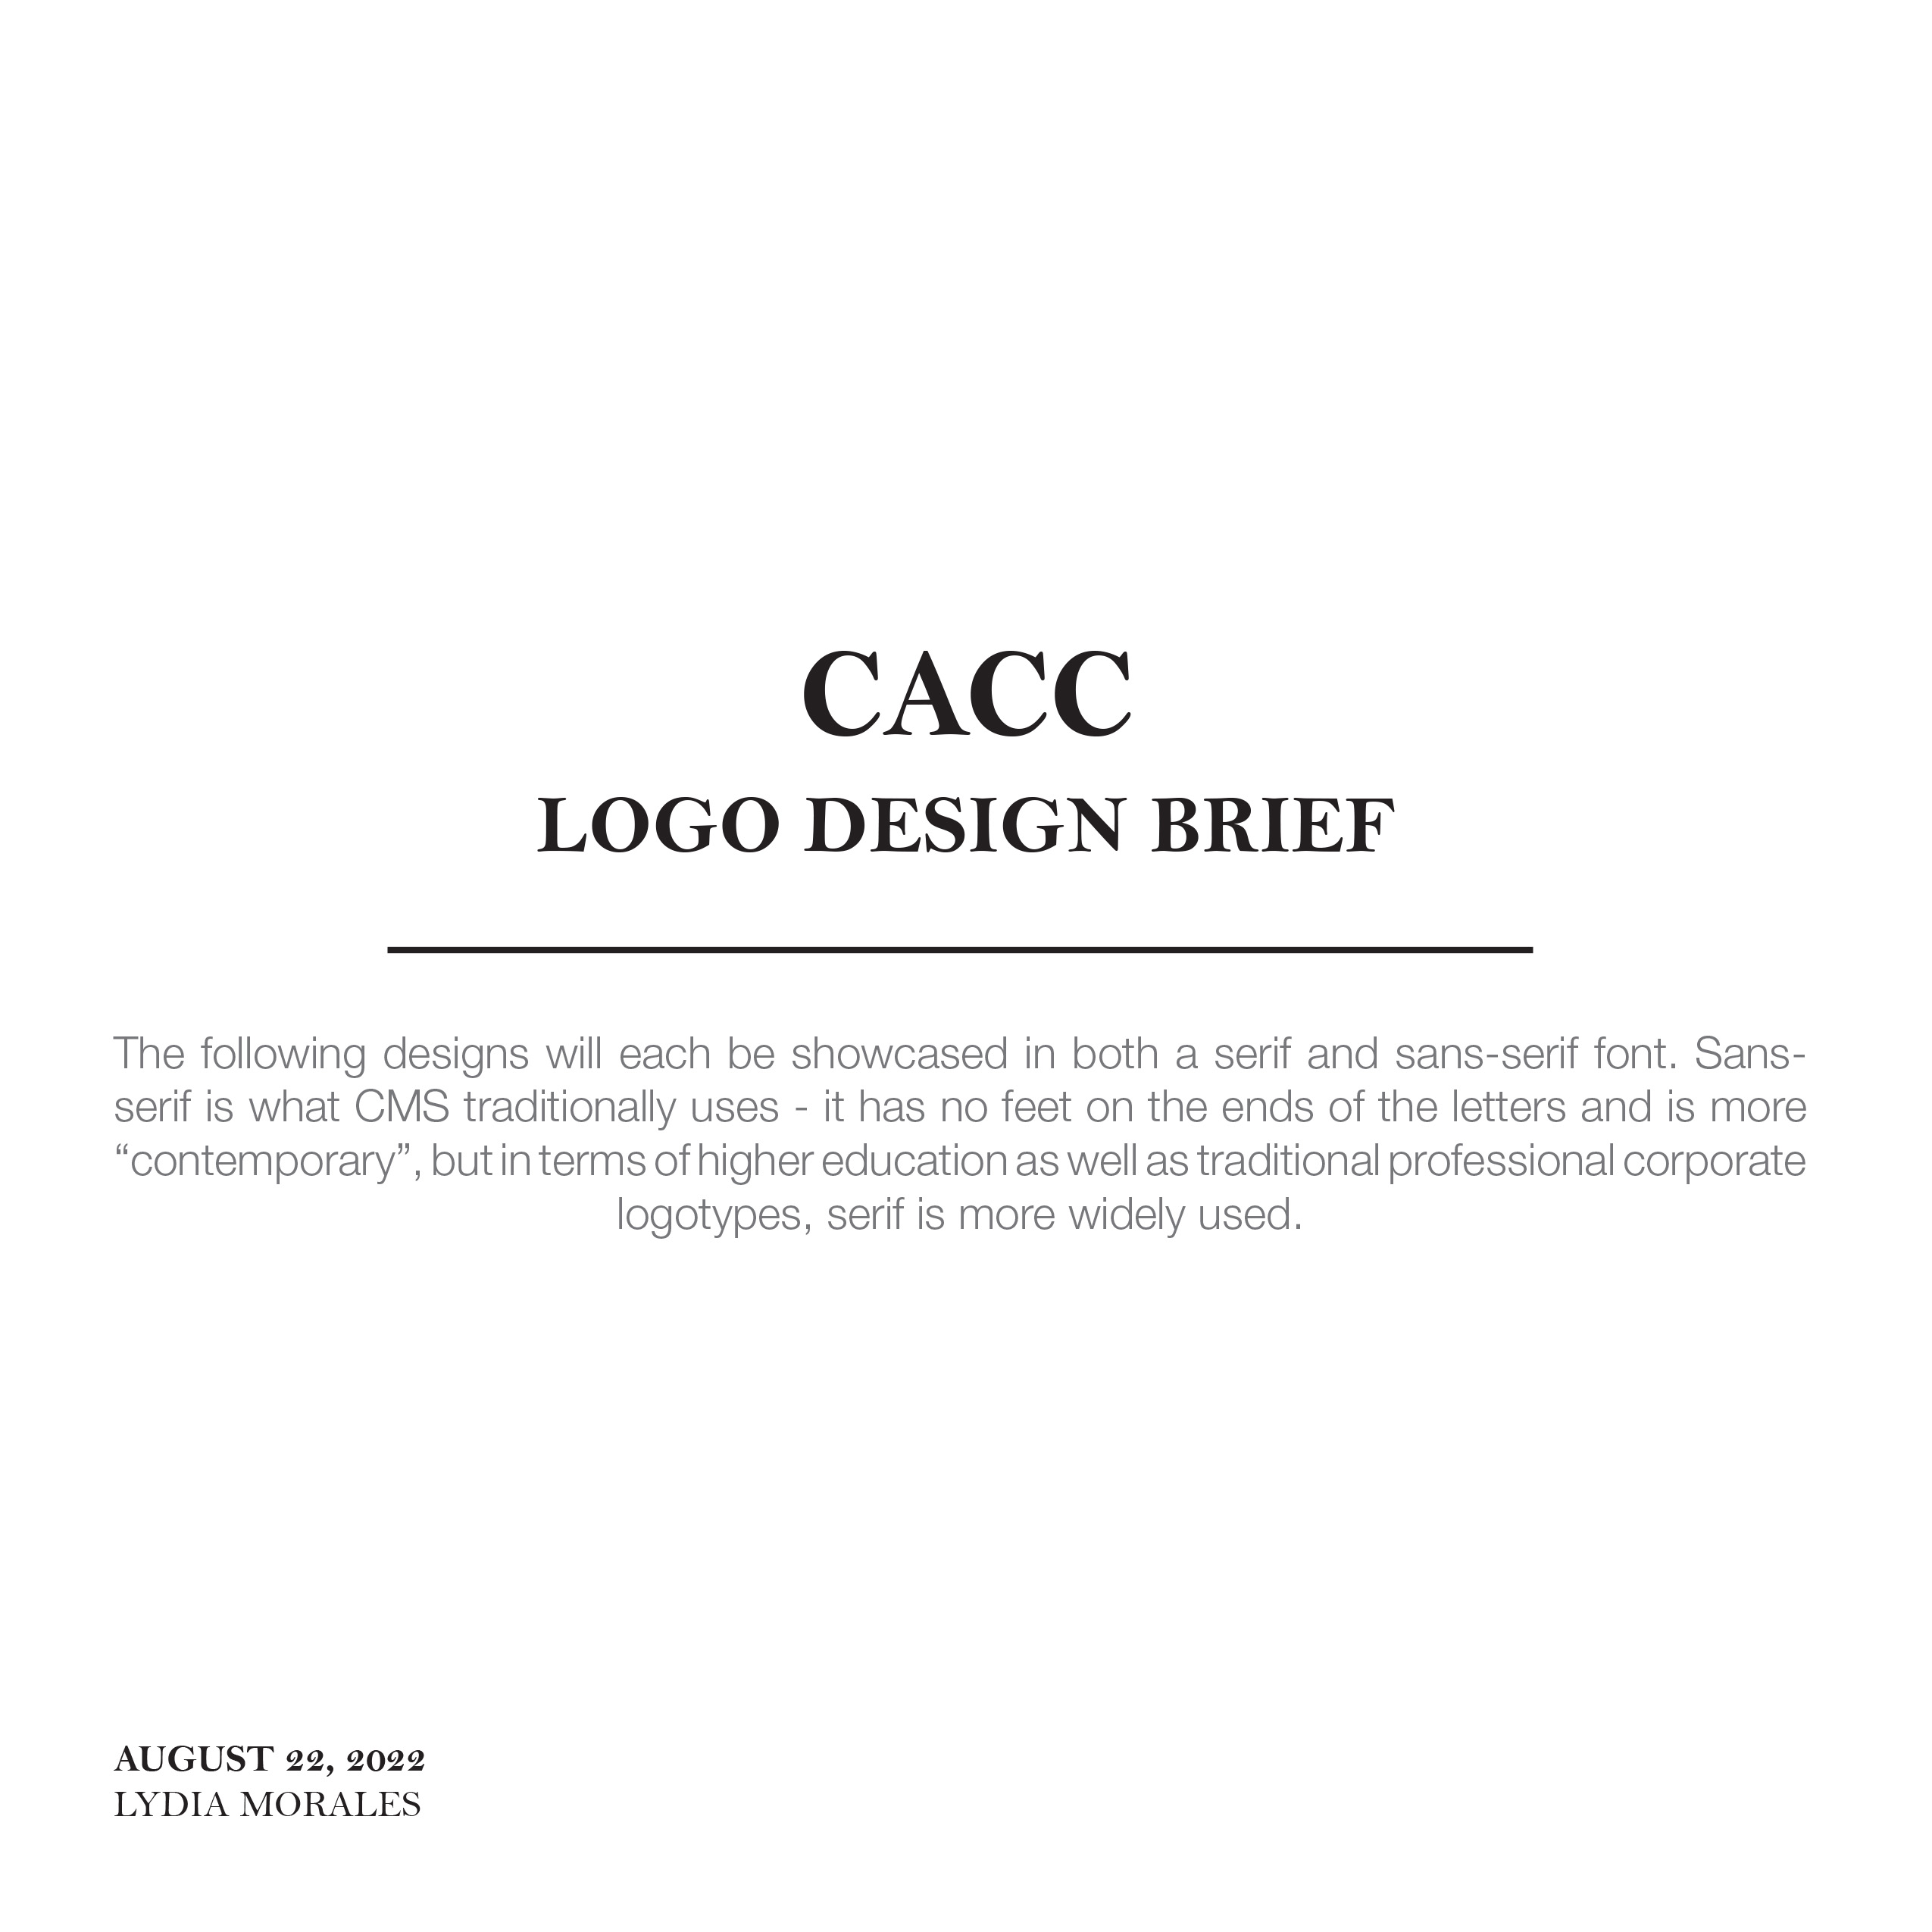 CACCI-logo-design-brief-1